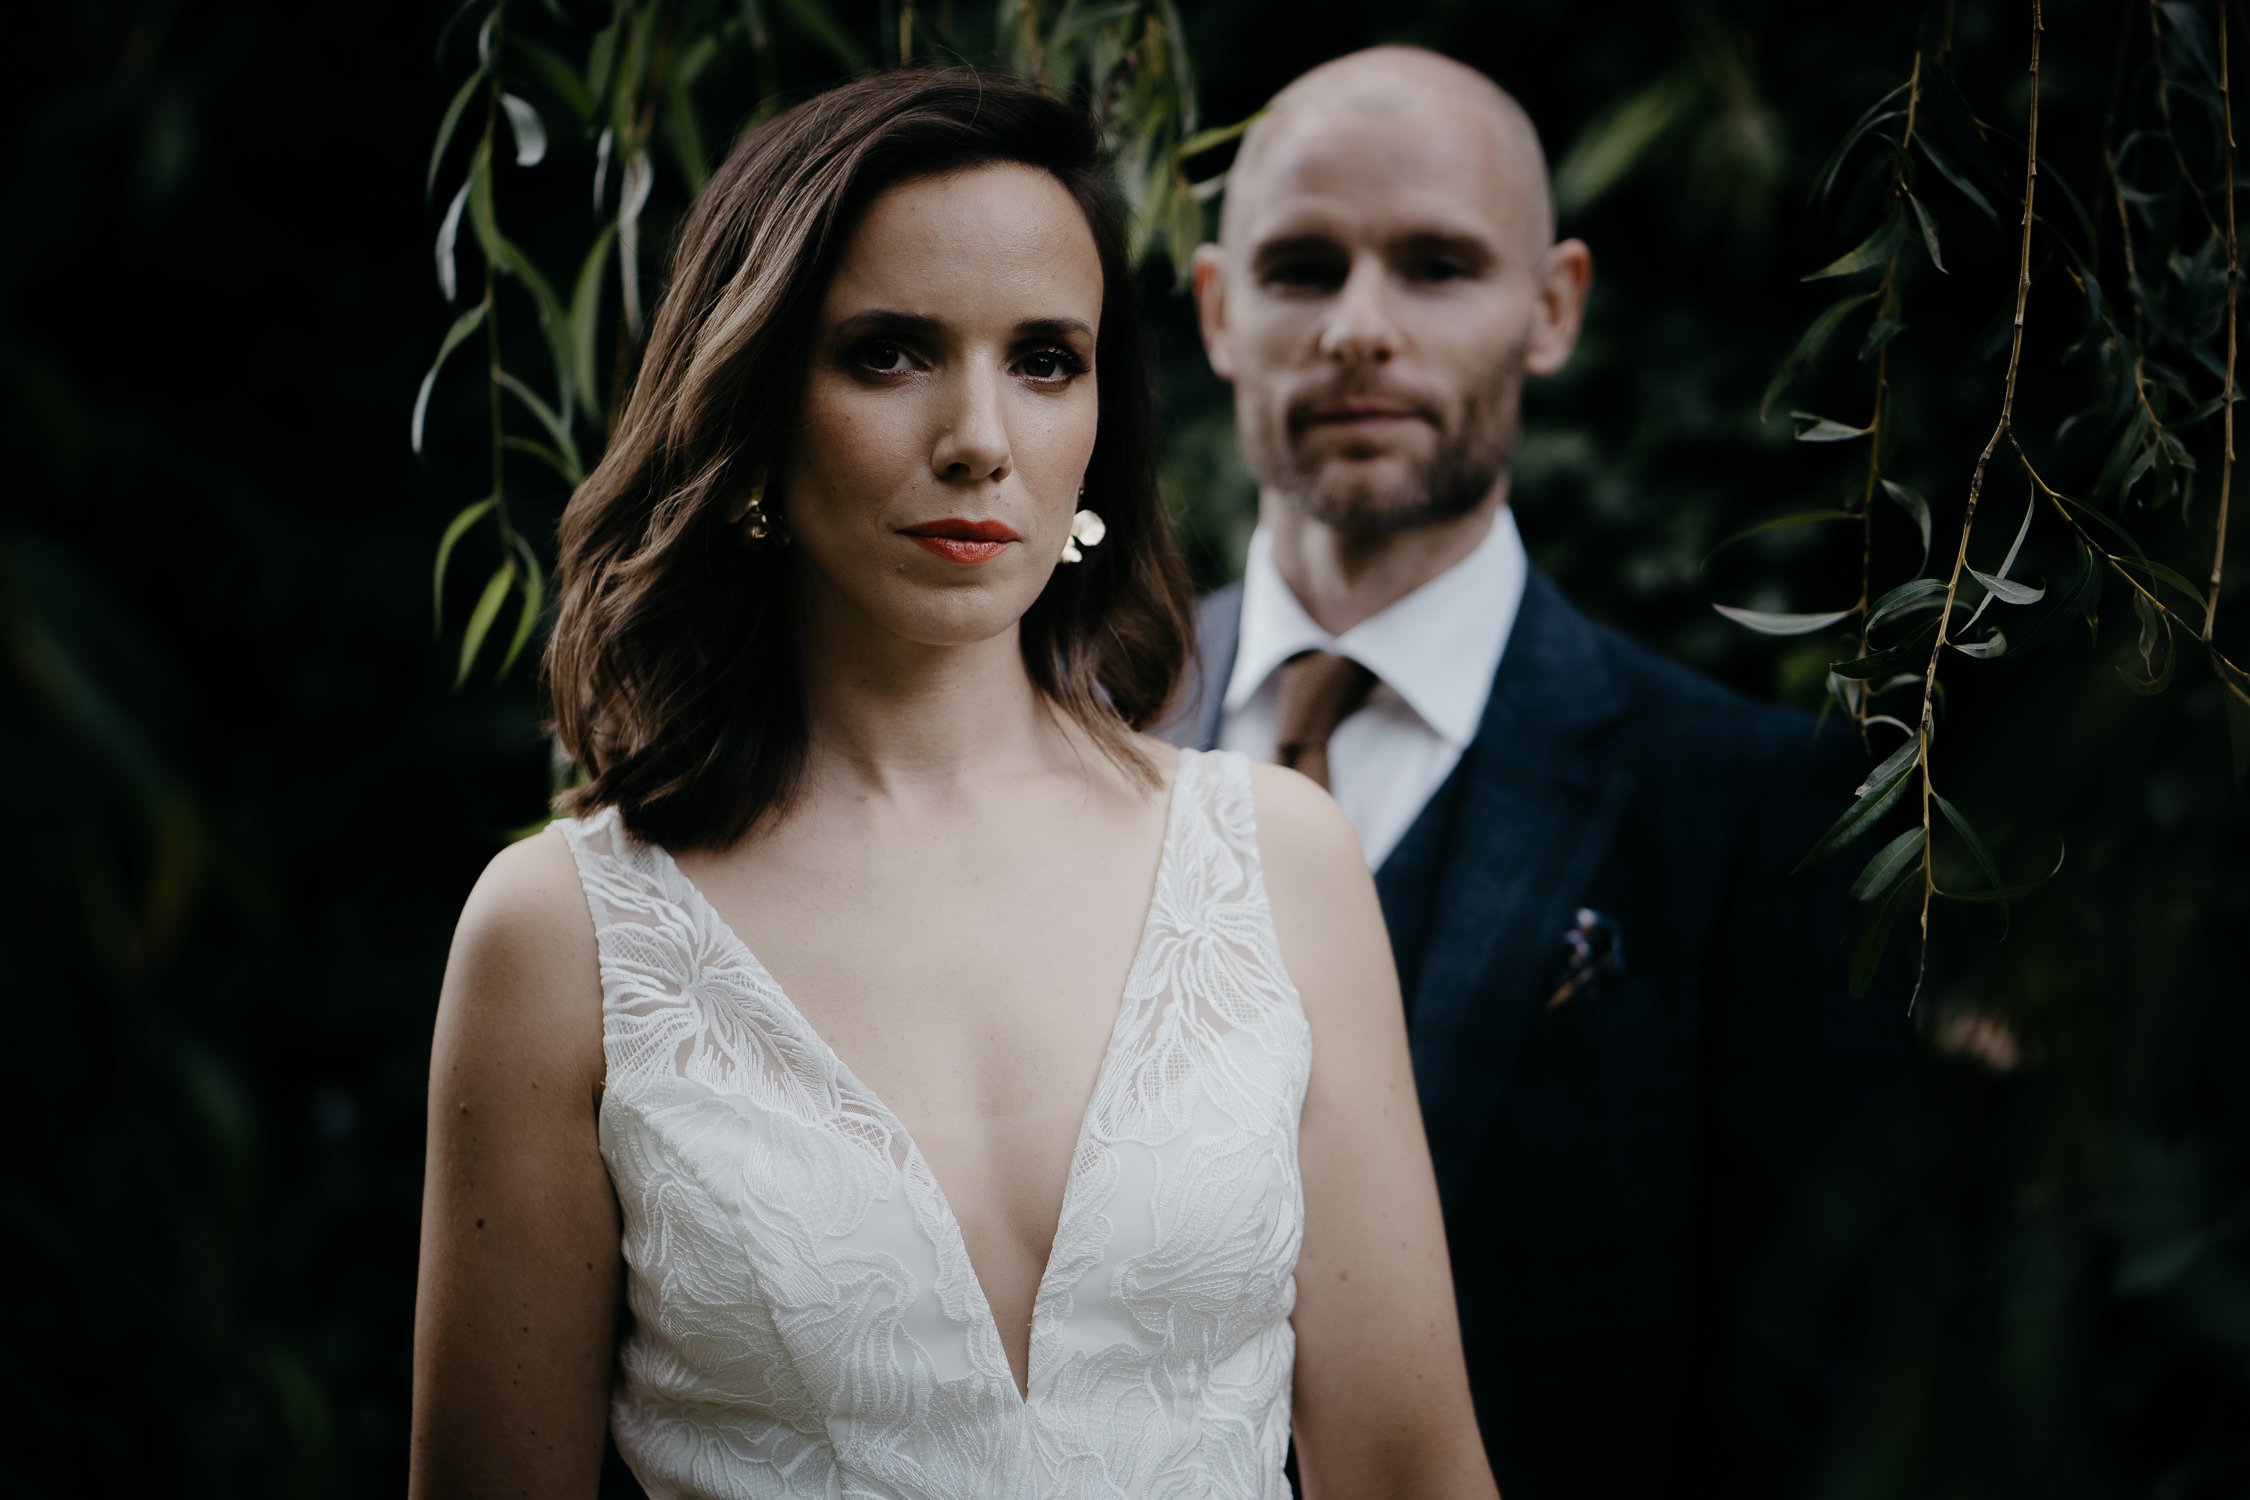 Bruidsportret - Huwelijk Op De Pol, Doetinchem, Mark Hadden Amsterdam Bruidfotograaf